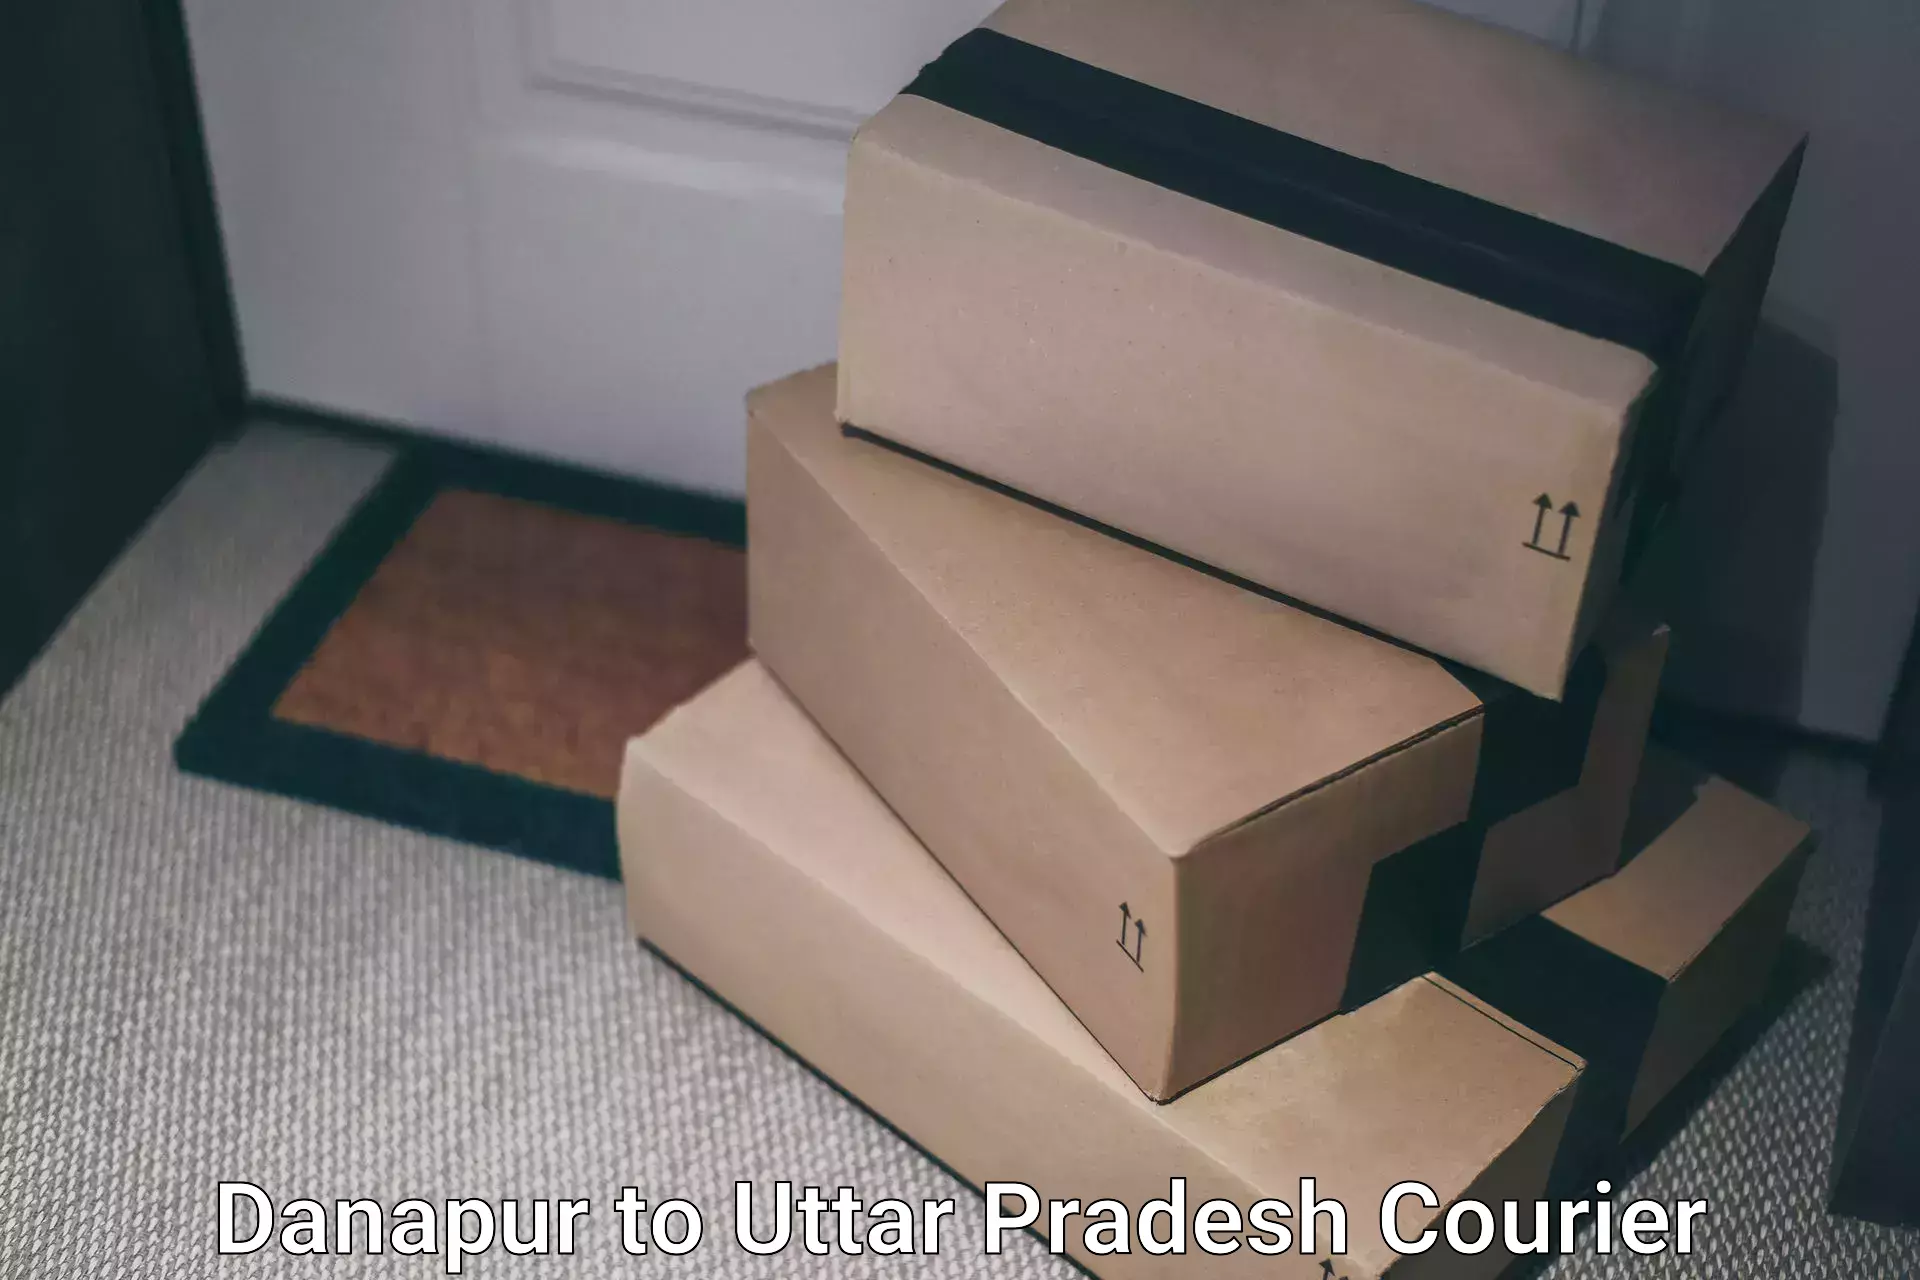 Doorstep delivery service Danapur to Sikandra Rao